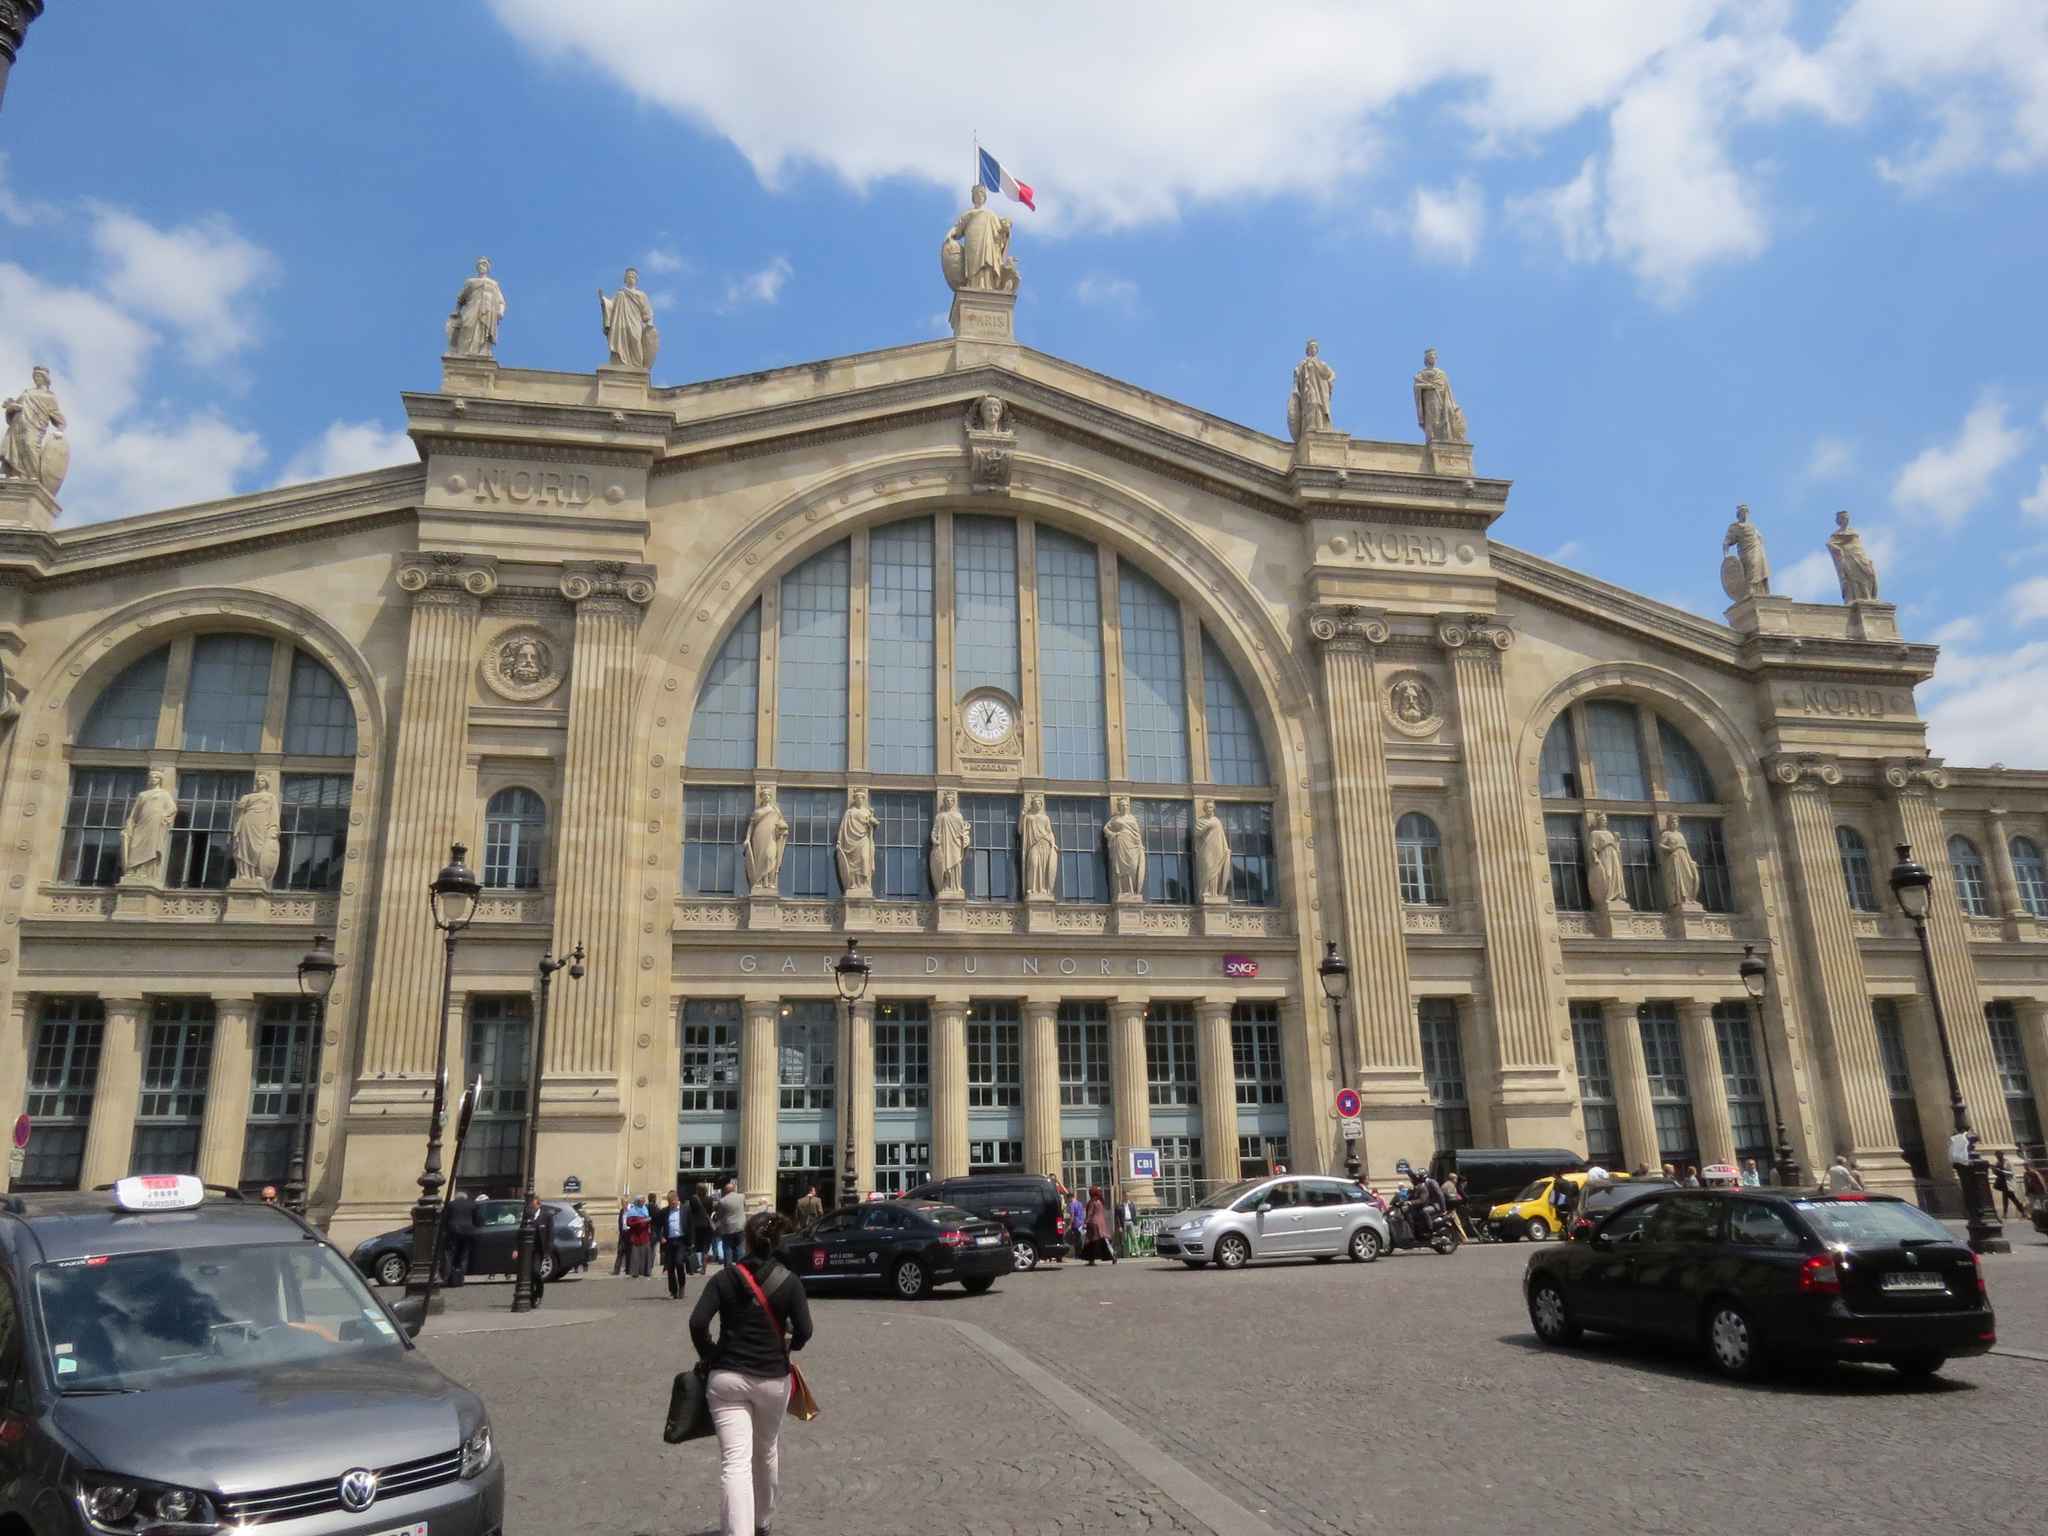 Gare du nord station